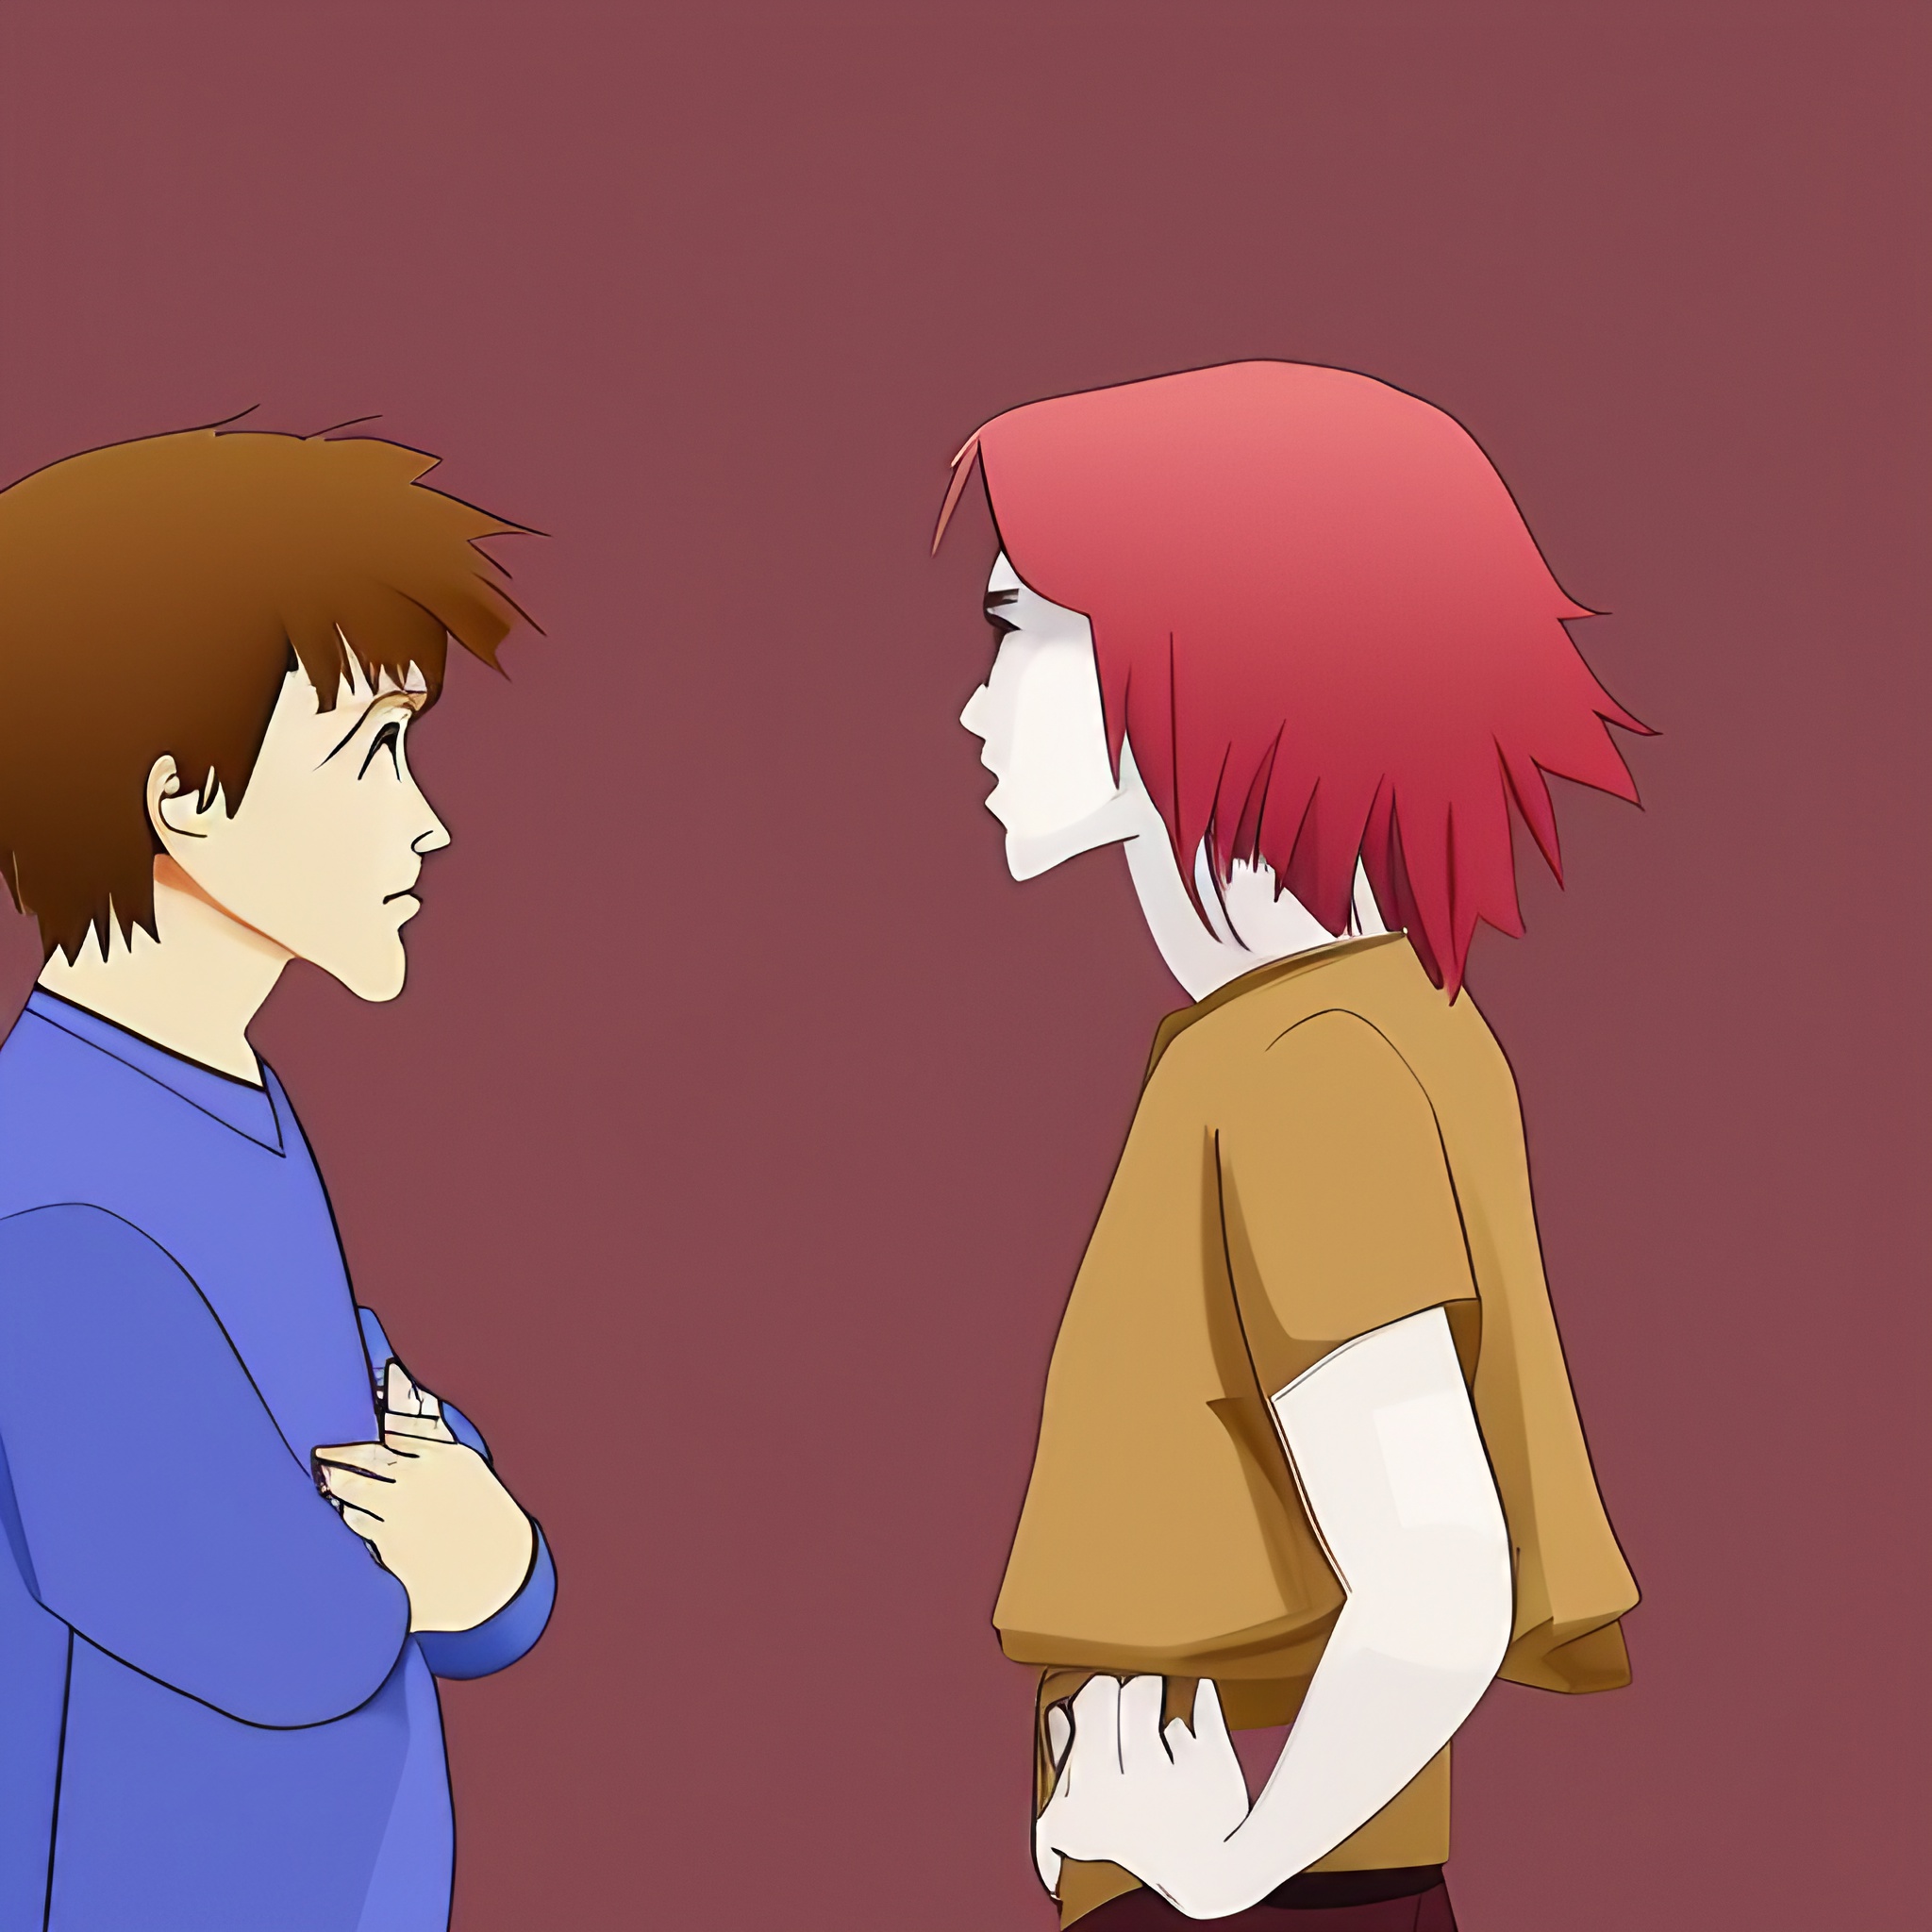 grafika w stylu kreskówki na grafice widać rodzica rozmawiającego z zbuntowanym nastolatkiem w glanach i czerwonych włosach